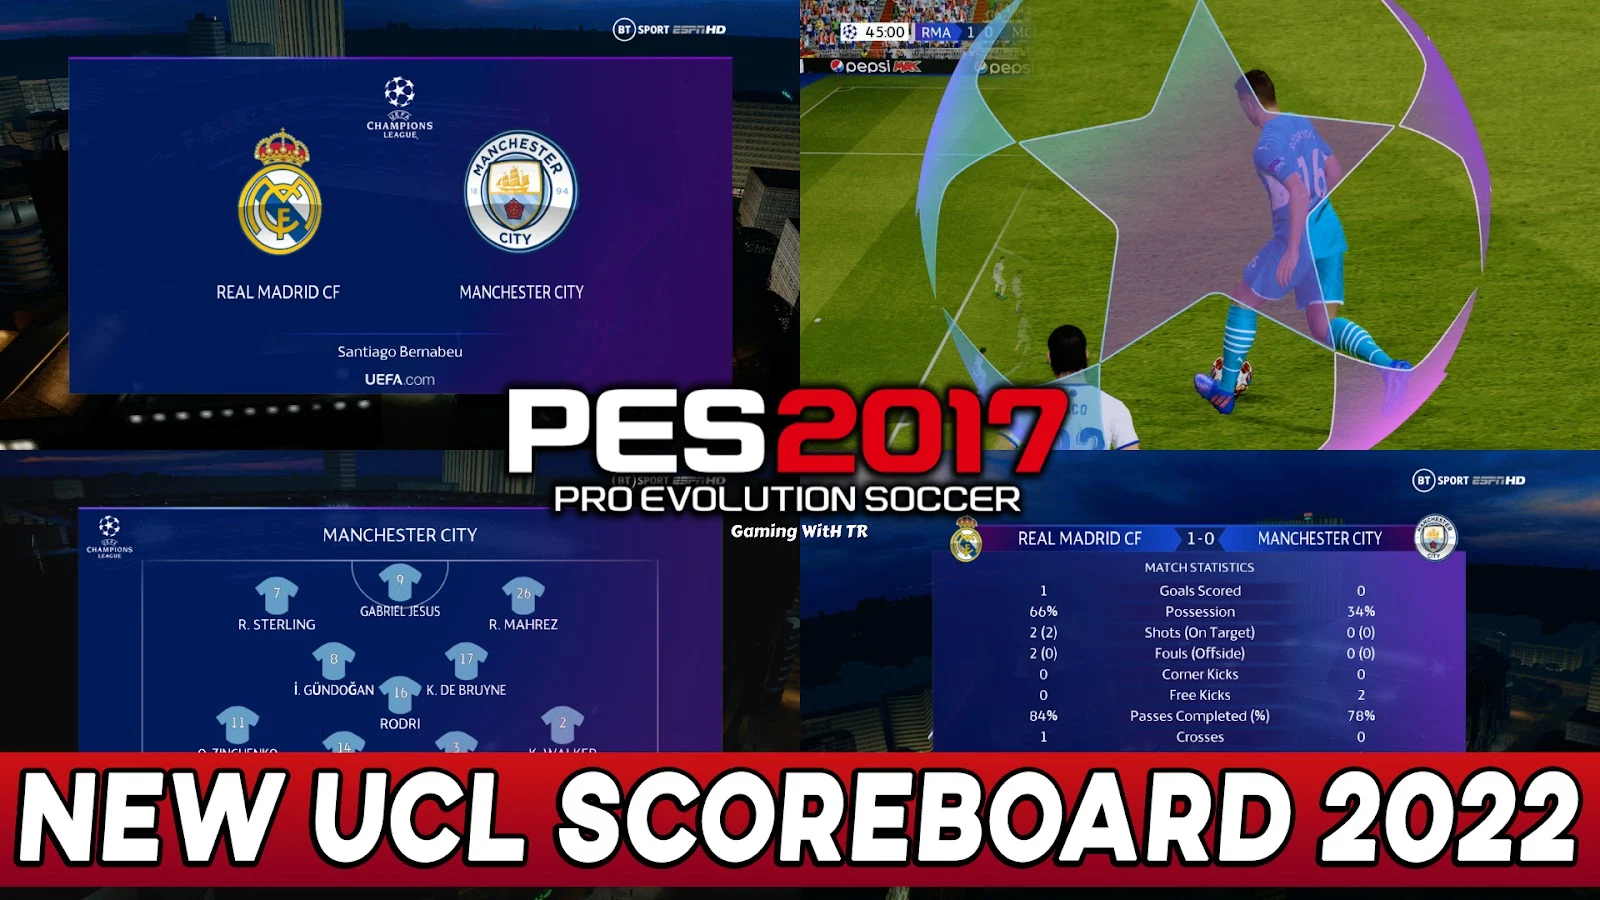 PES 2017 | New UEFA Champions League Scoreboard Season 2022